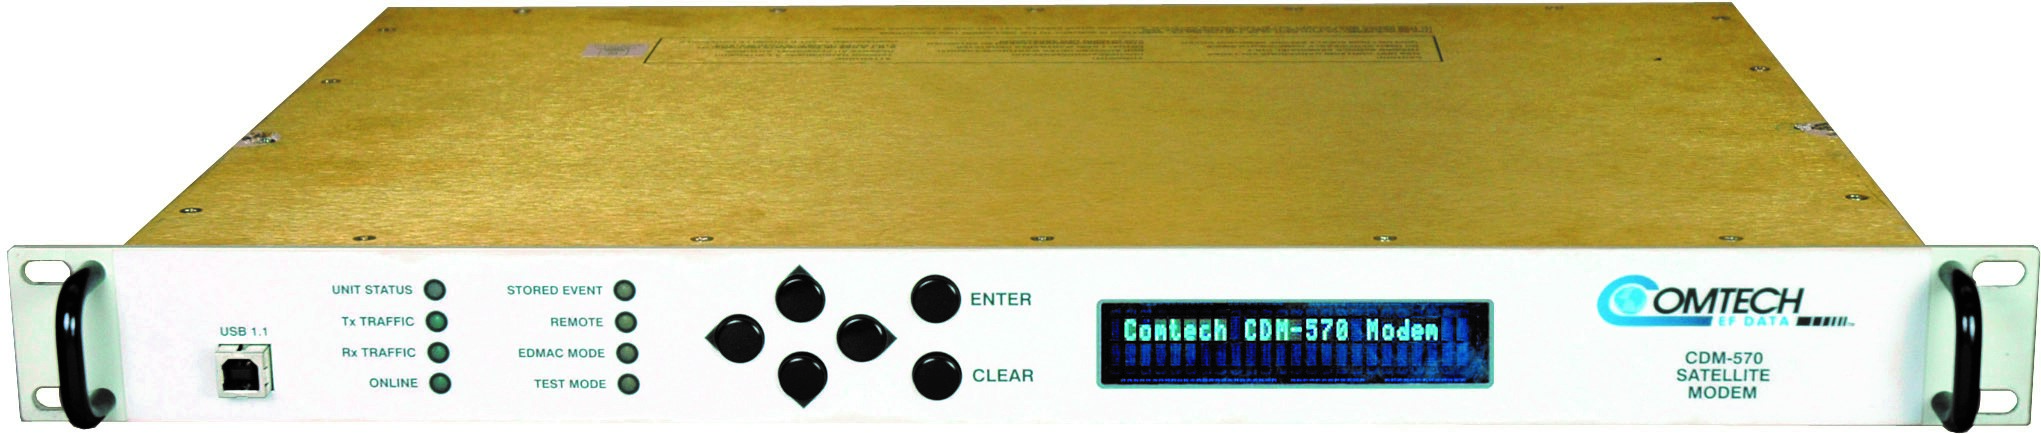 COMTECH CDM-570 IF